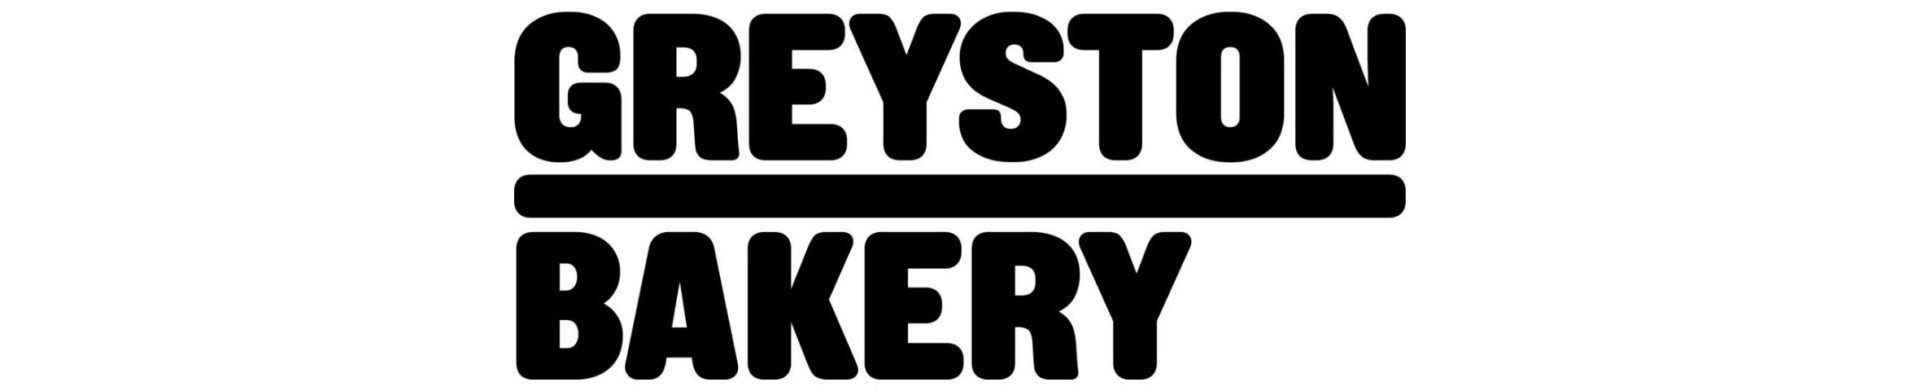 Greyston Bakery company name